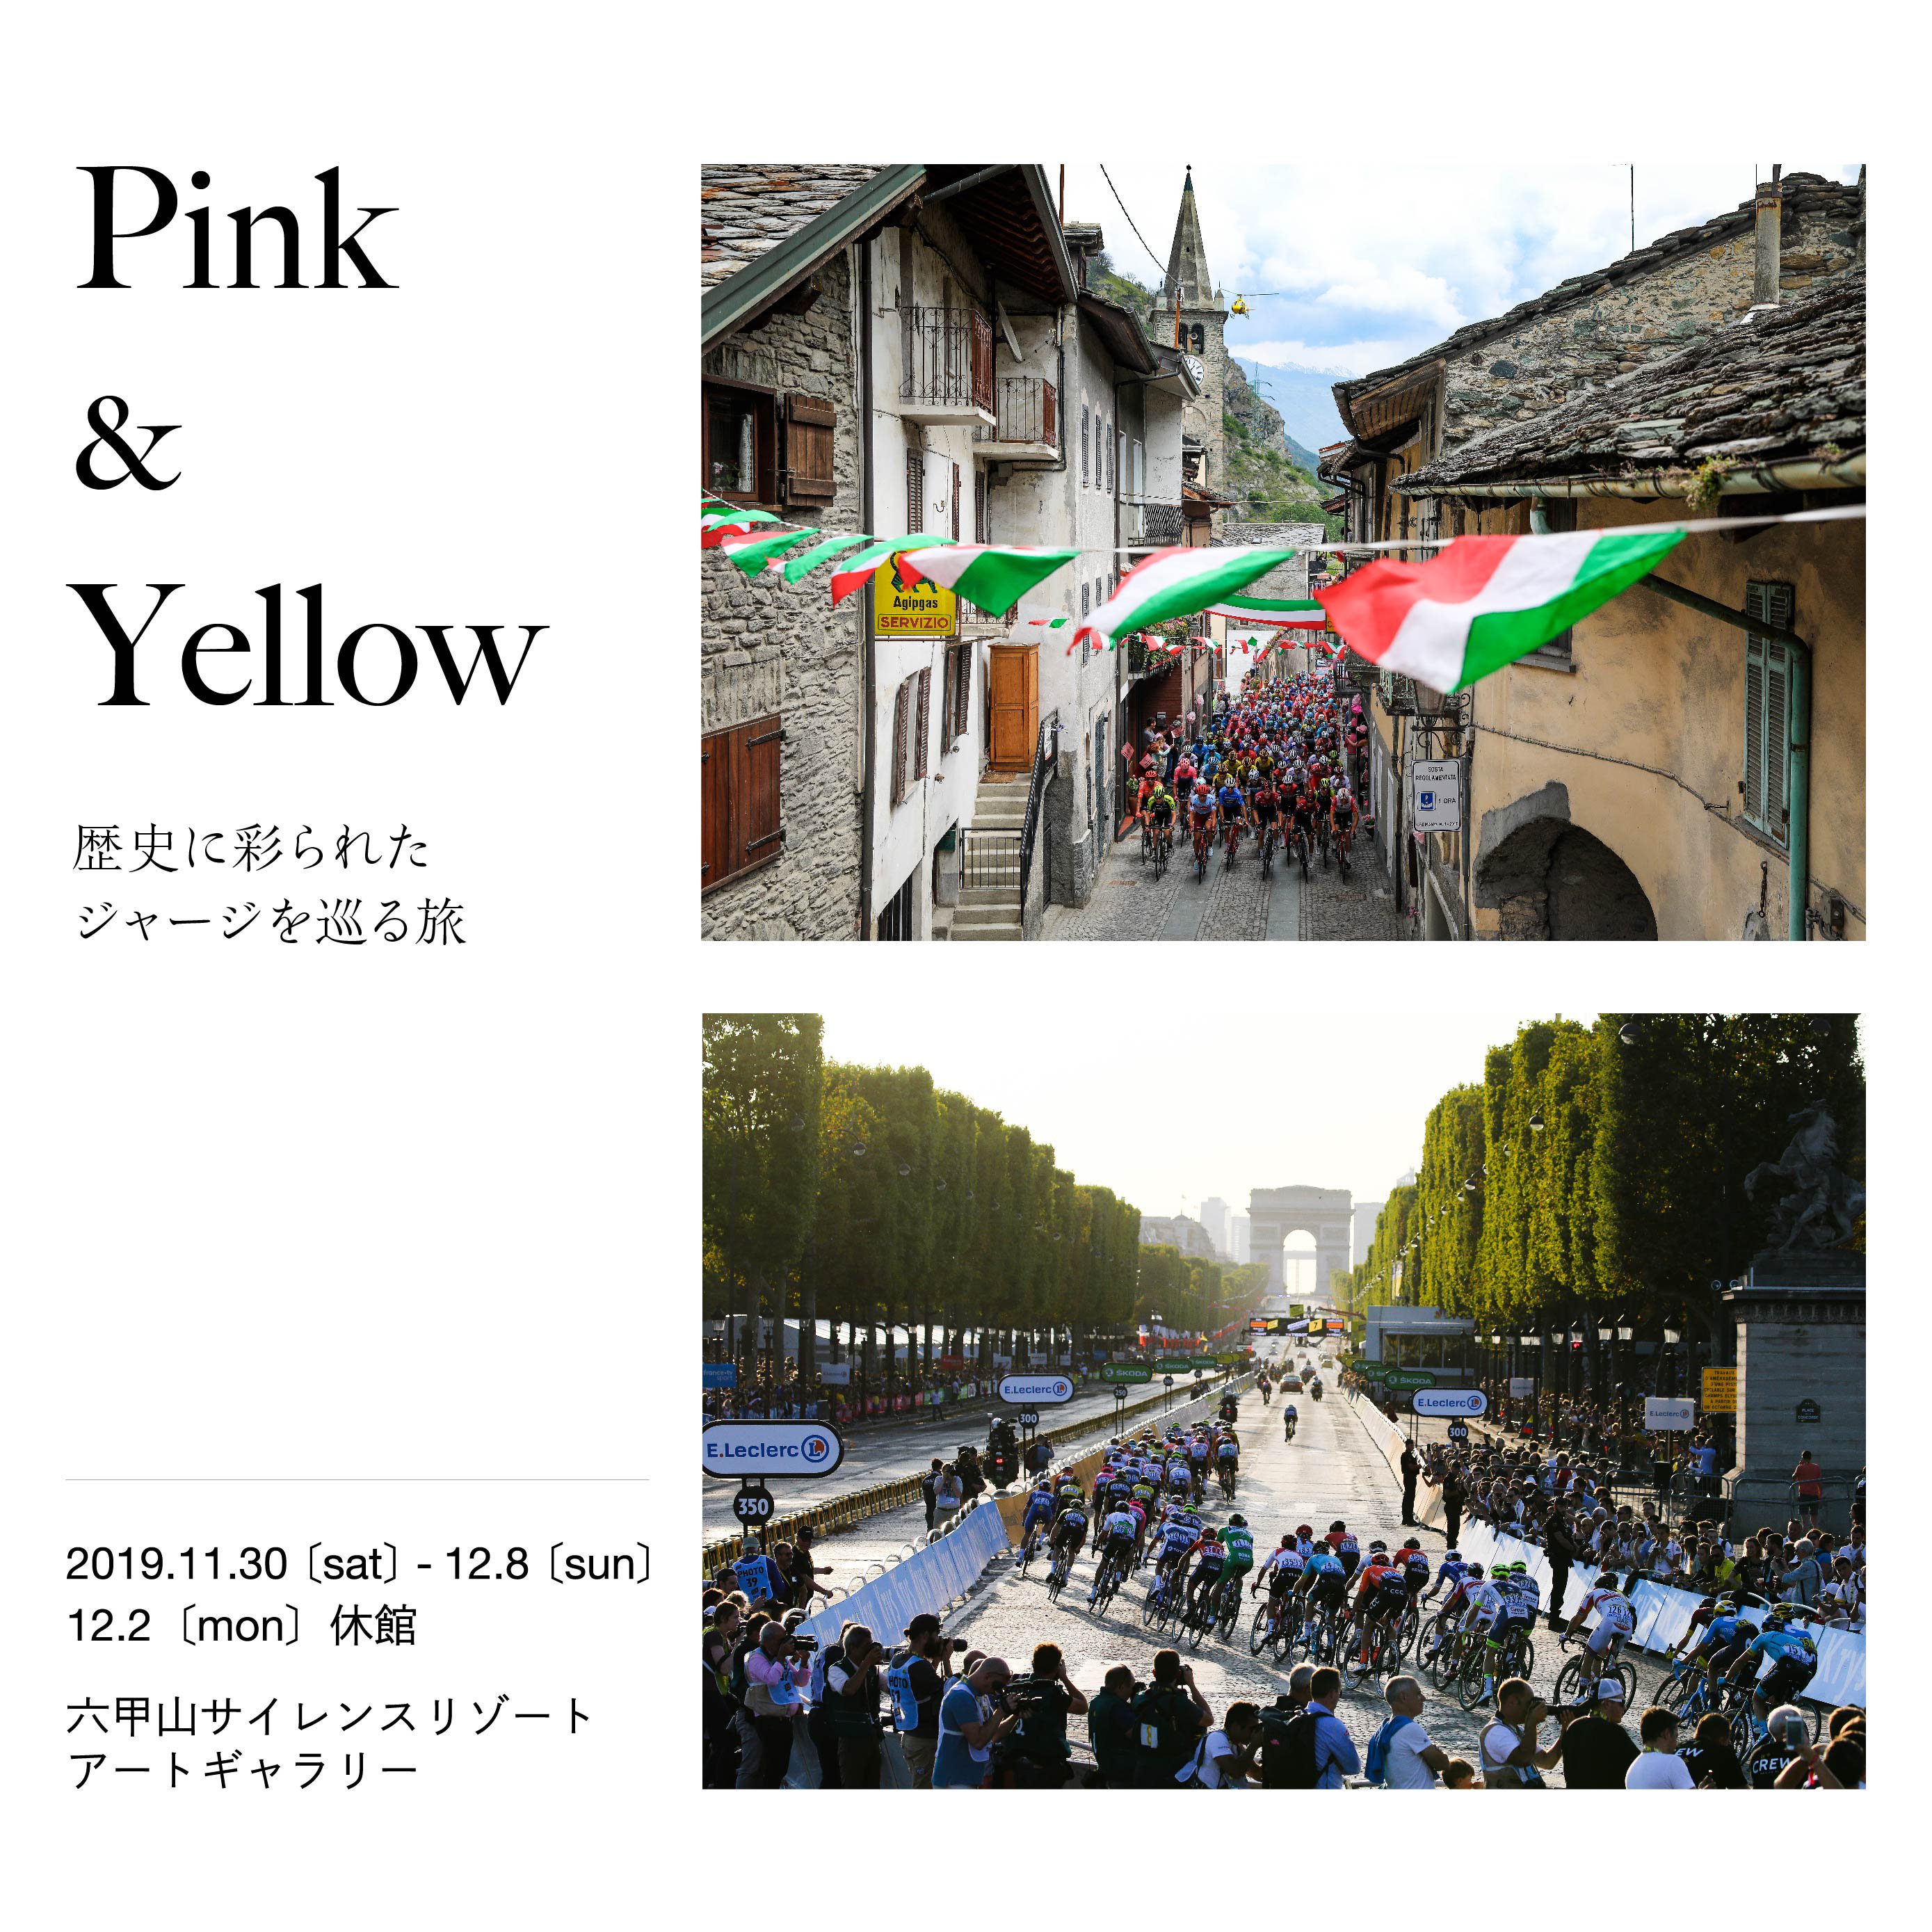 六甲山サイレンスリゾートで開催される写真展「Pink & Yellow」